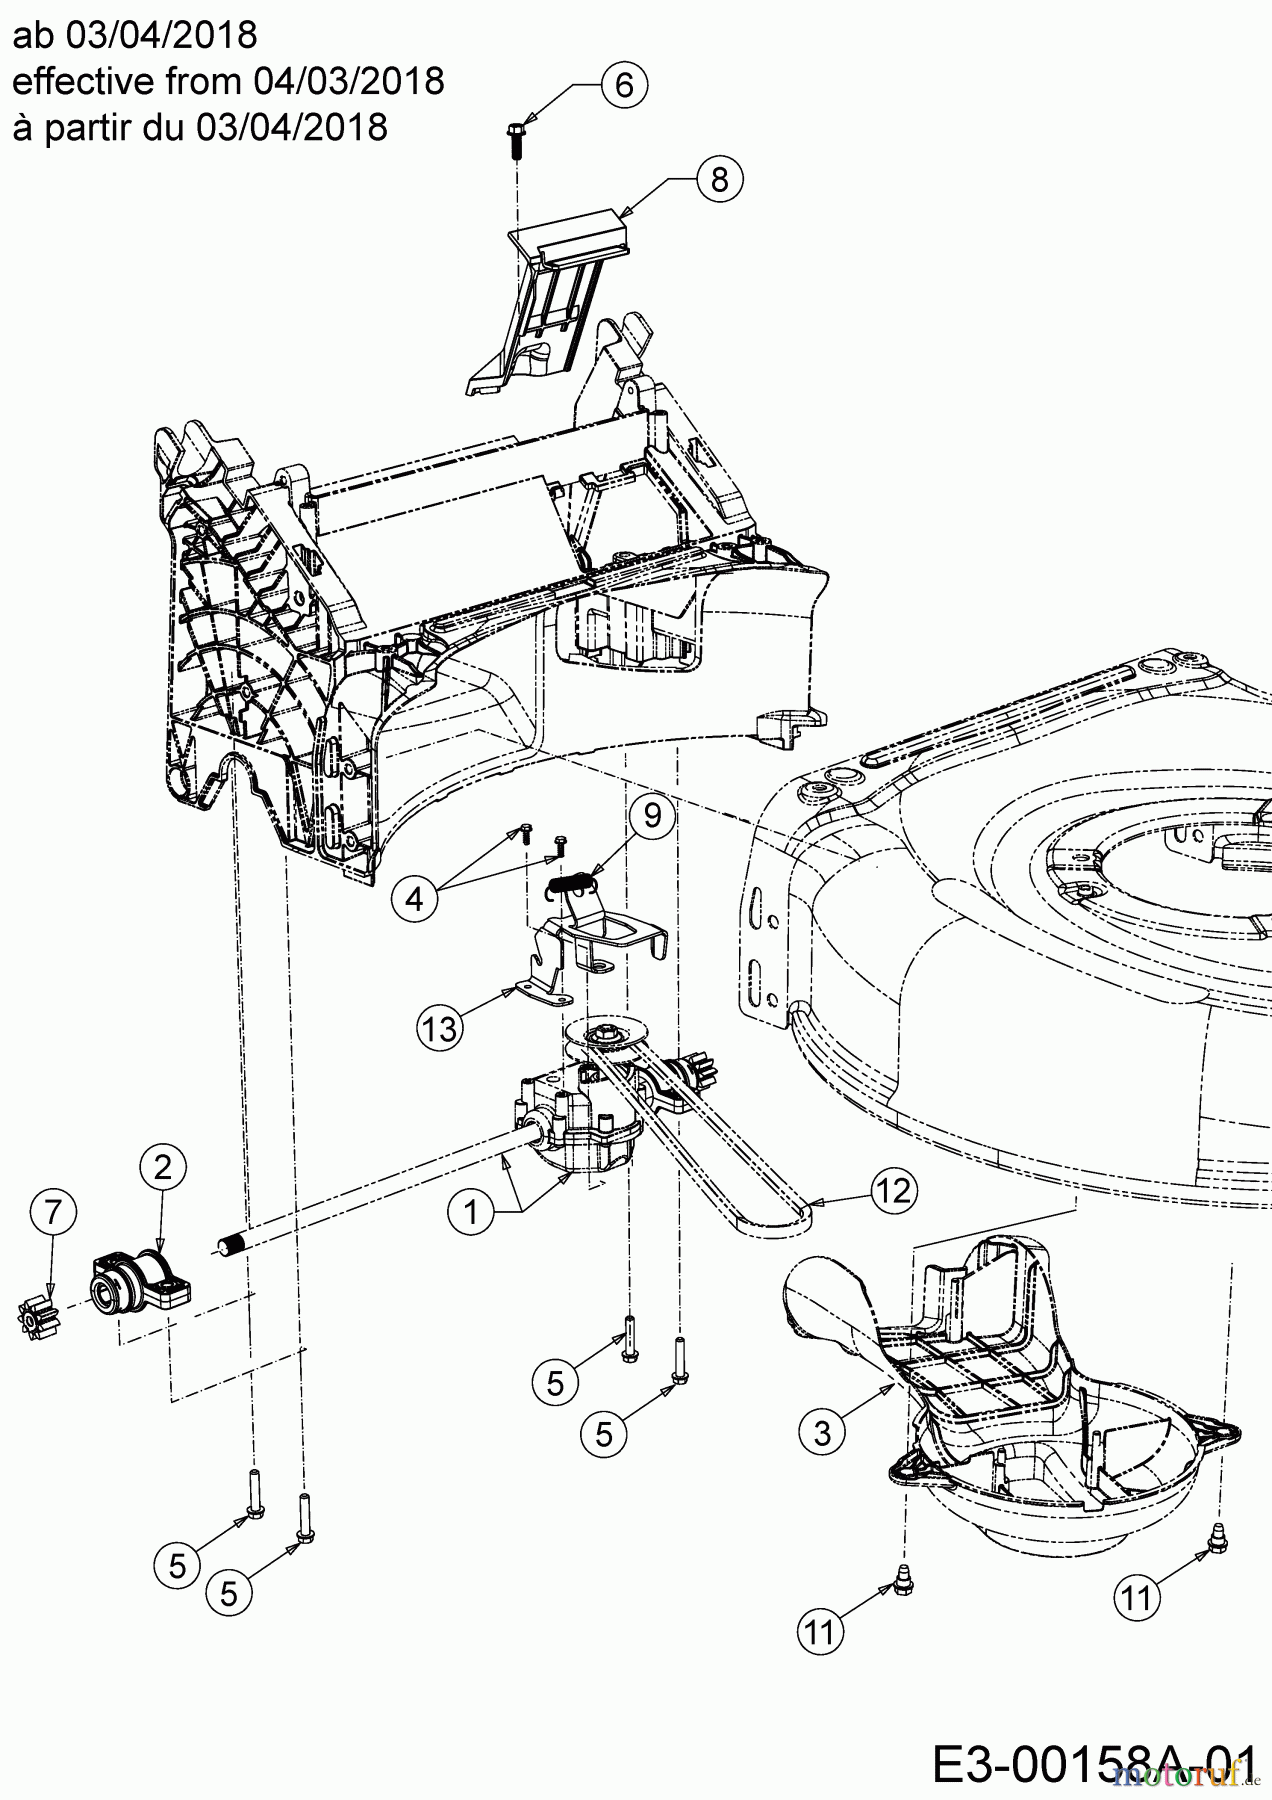  Wolf-Garten Petrol mower self propelled AH 4200 H 12A-LV5B650  (2018) Gearbox, Belt from 04/03/2018